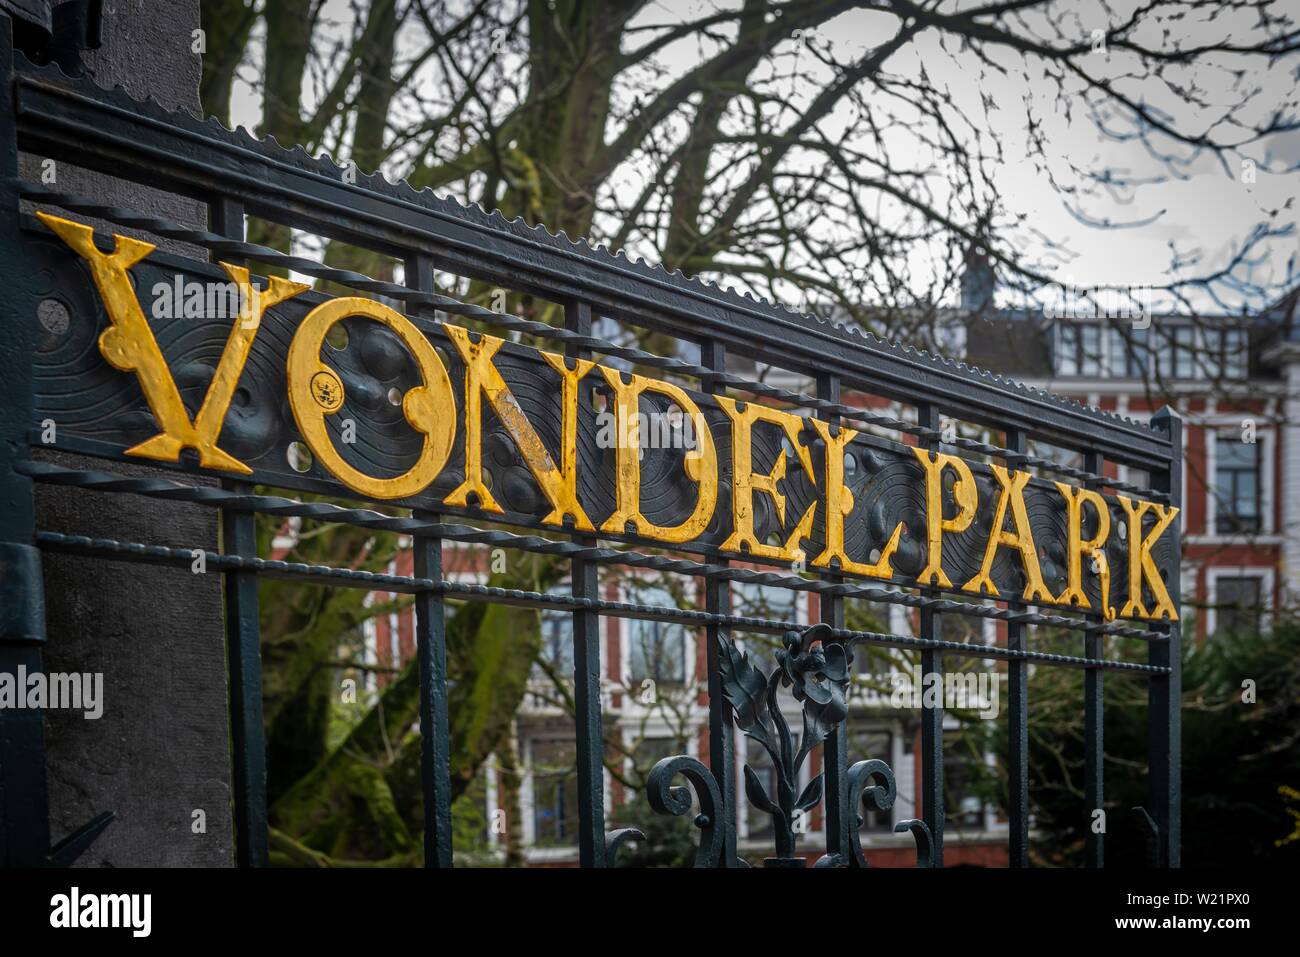 El Vondel Park, Golden signo de puerta de entrada, el Stadtpark, Amsterdam, Países Bajos, Nordholland Foto de stock